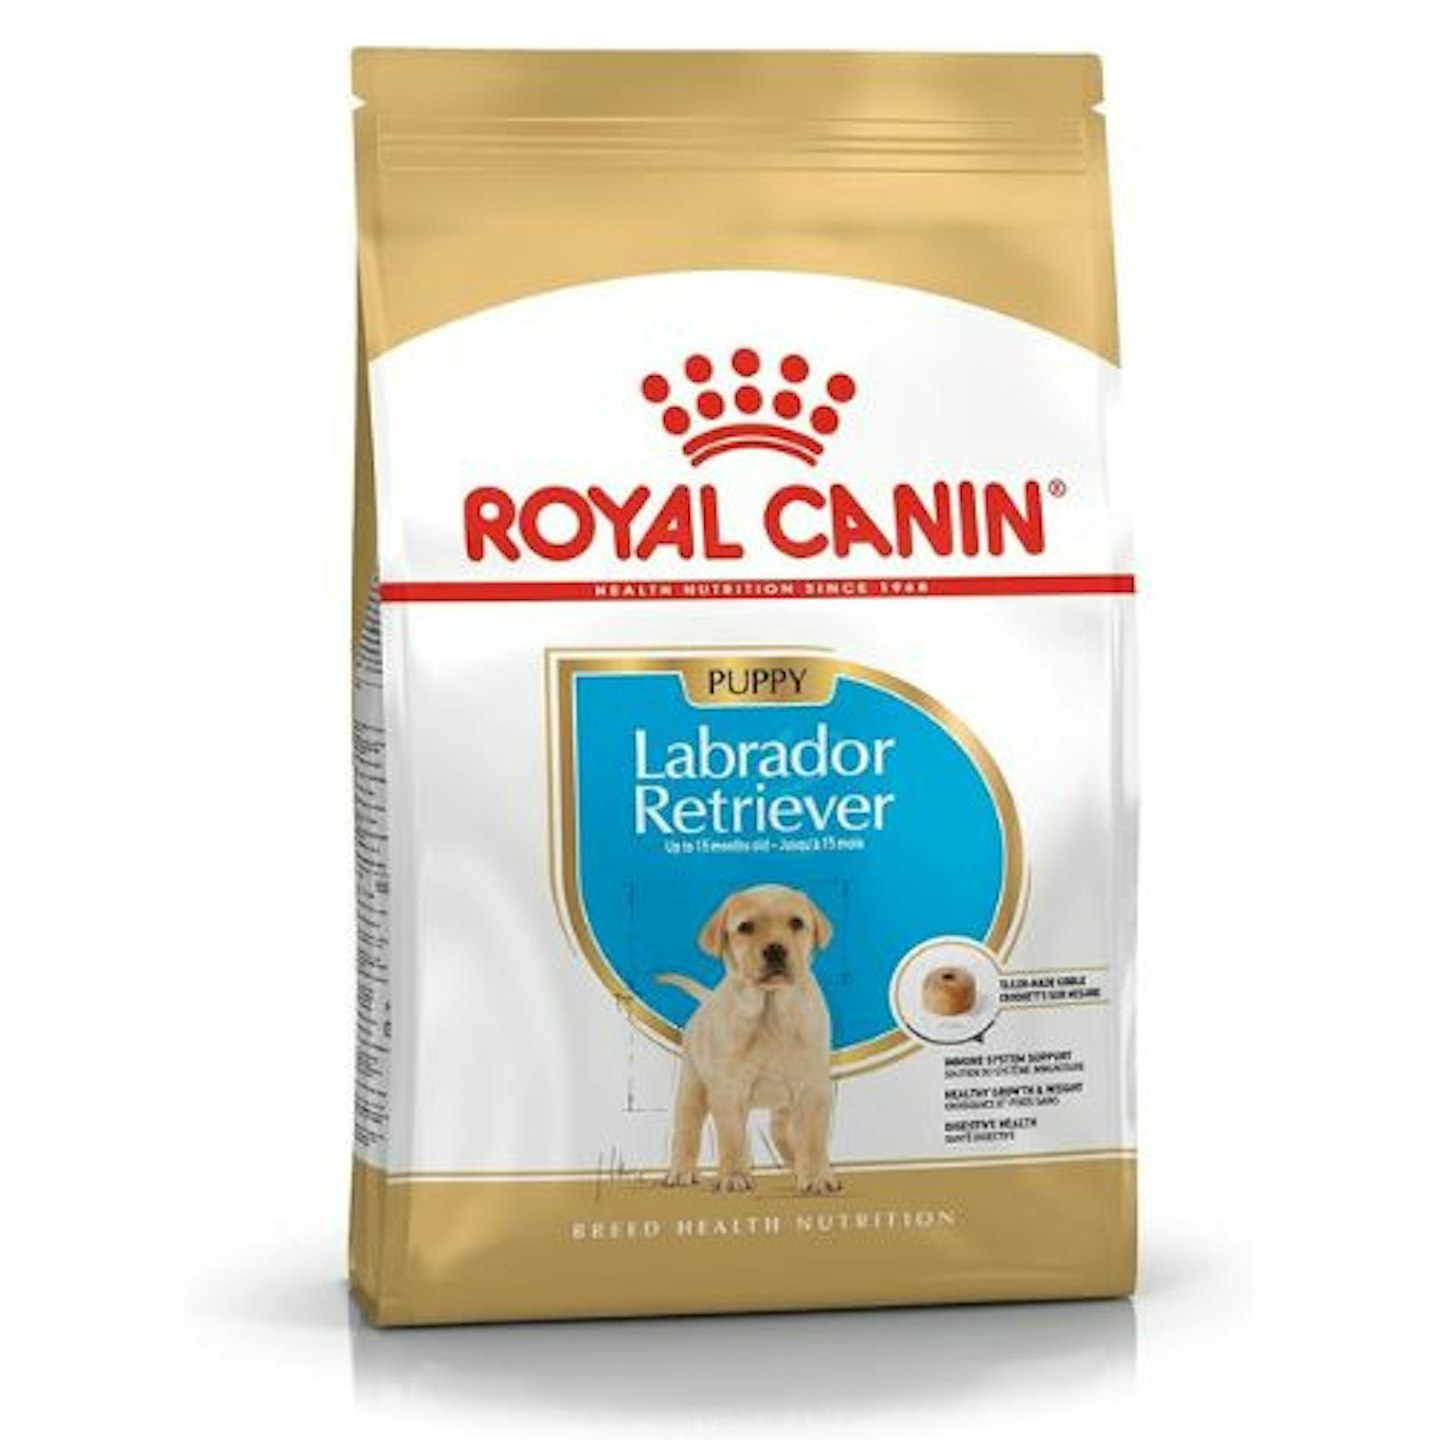 Royal Canin Dog Food Labrador Retriever Puppy Dry Mix